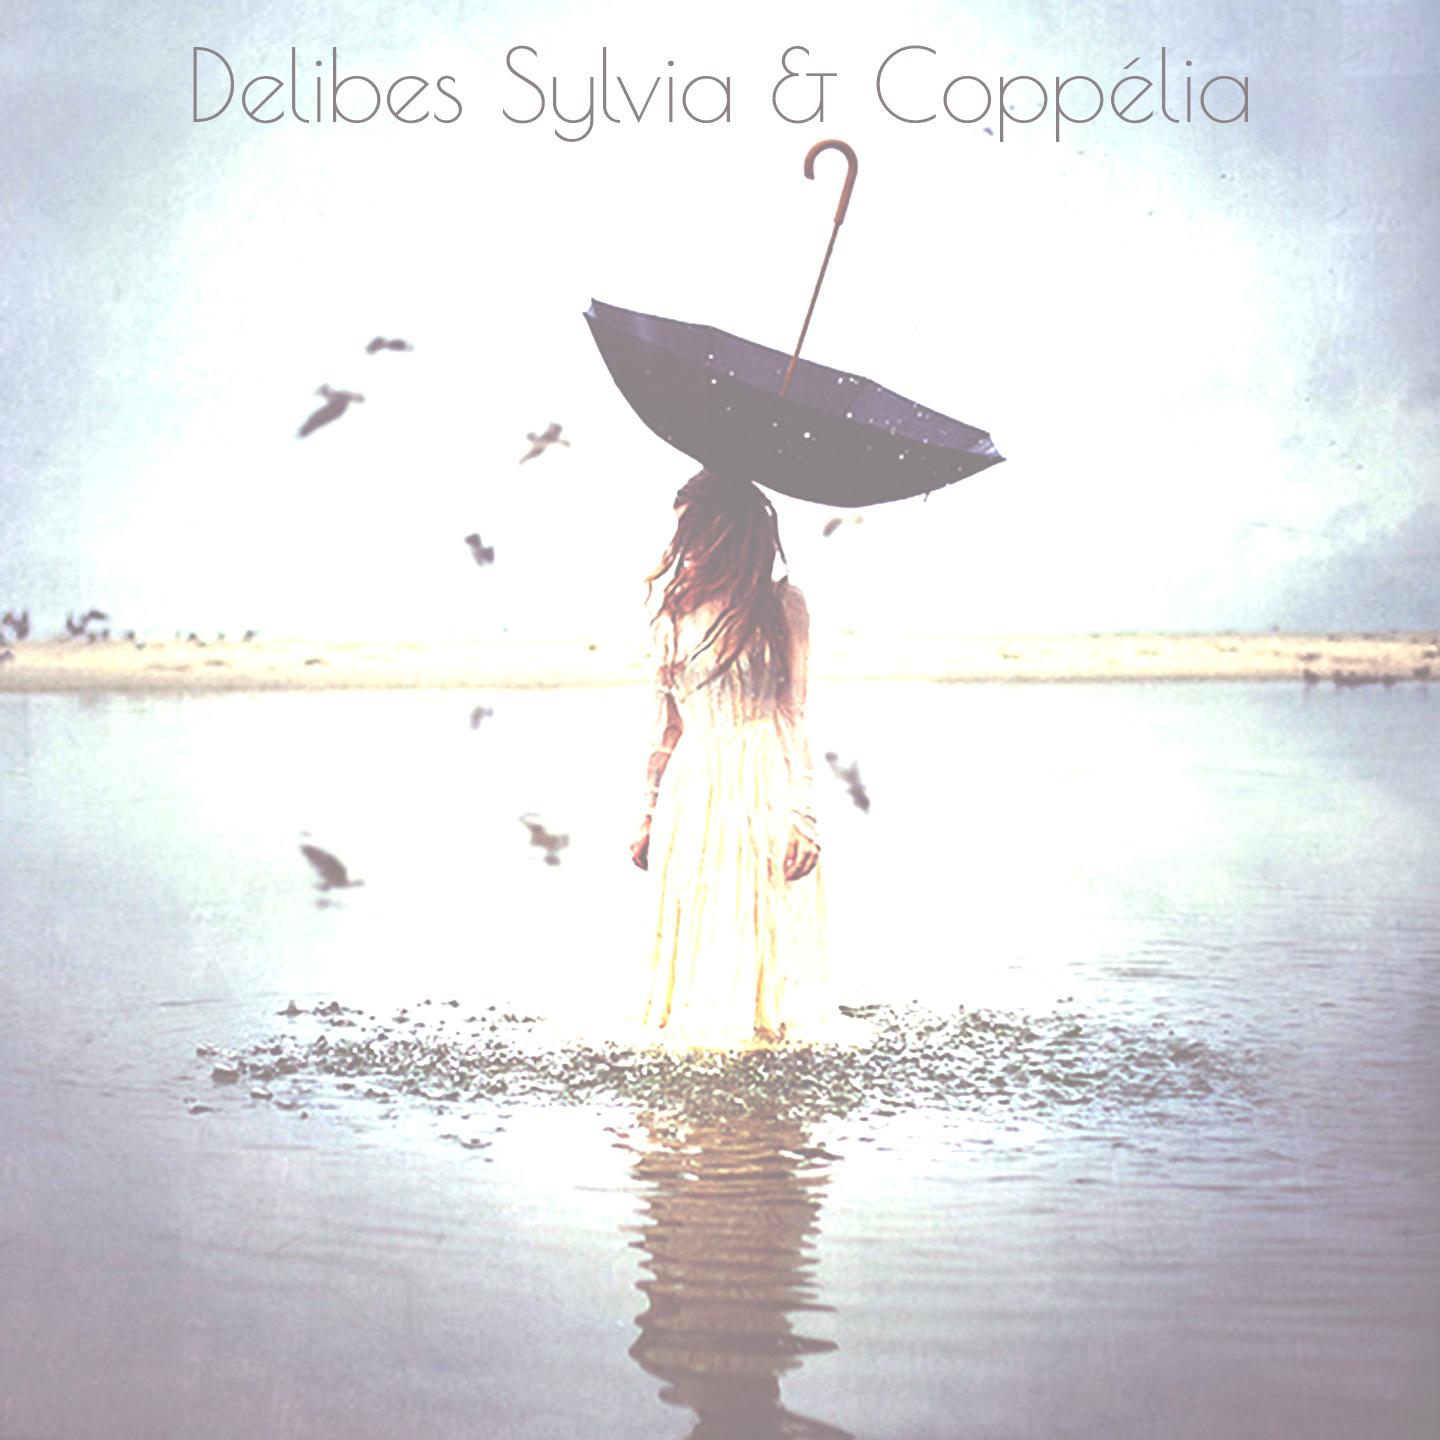 Delibes Sylvia  Coppe lia